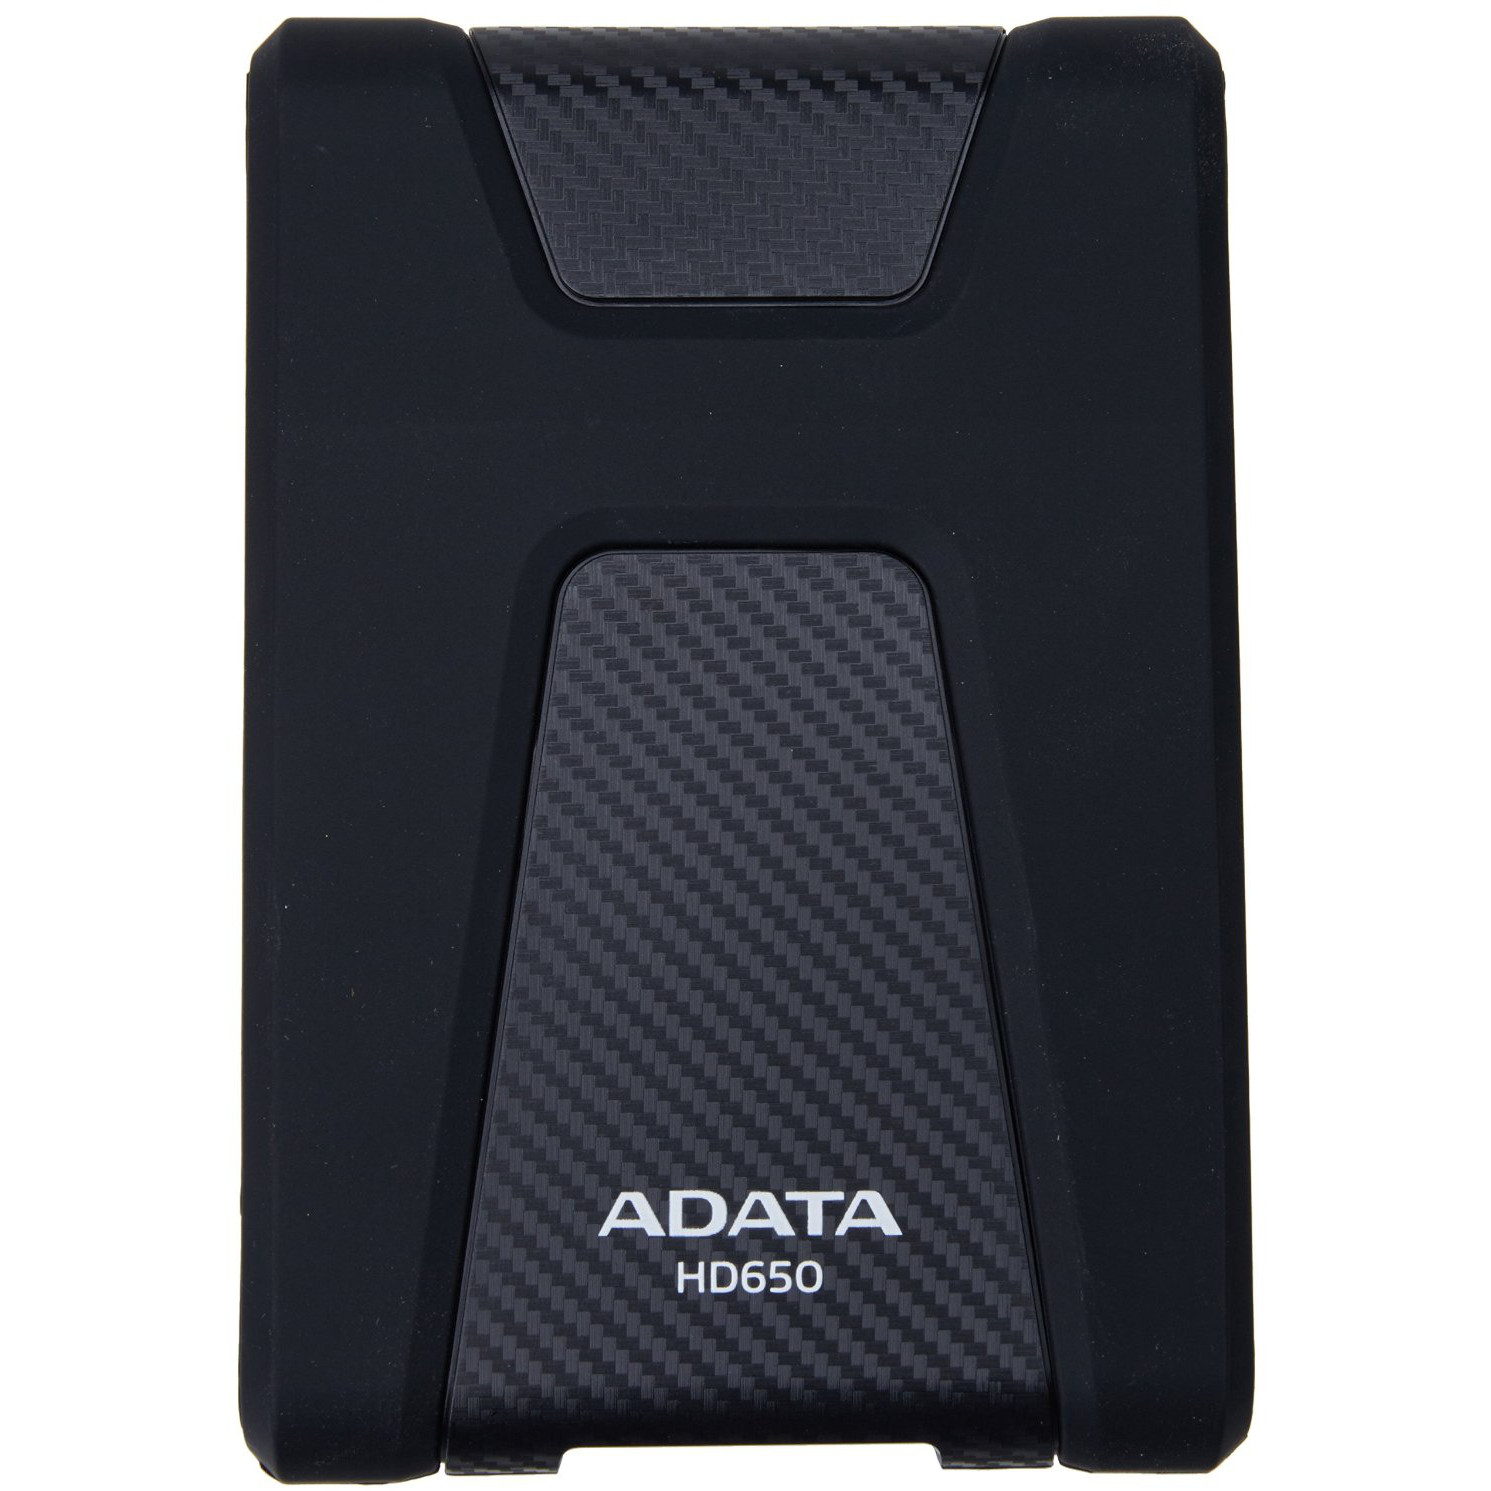  HDD extern A-DATA AHD650, 2TB, 2.5", USB 3.0, Negru 